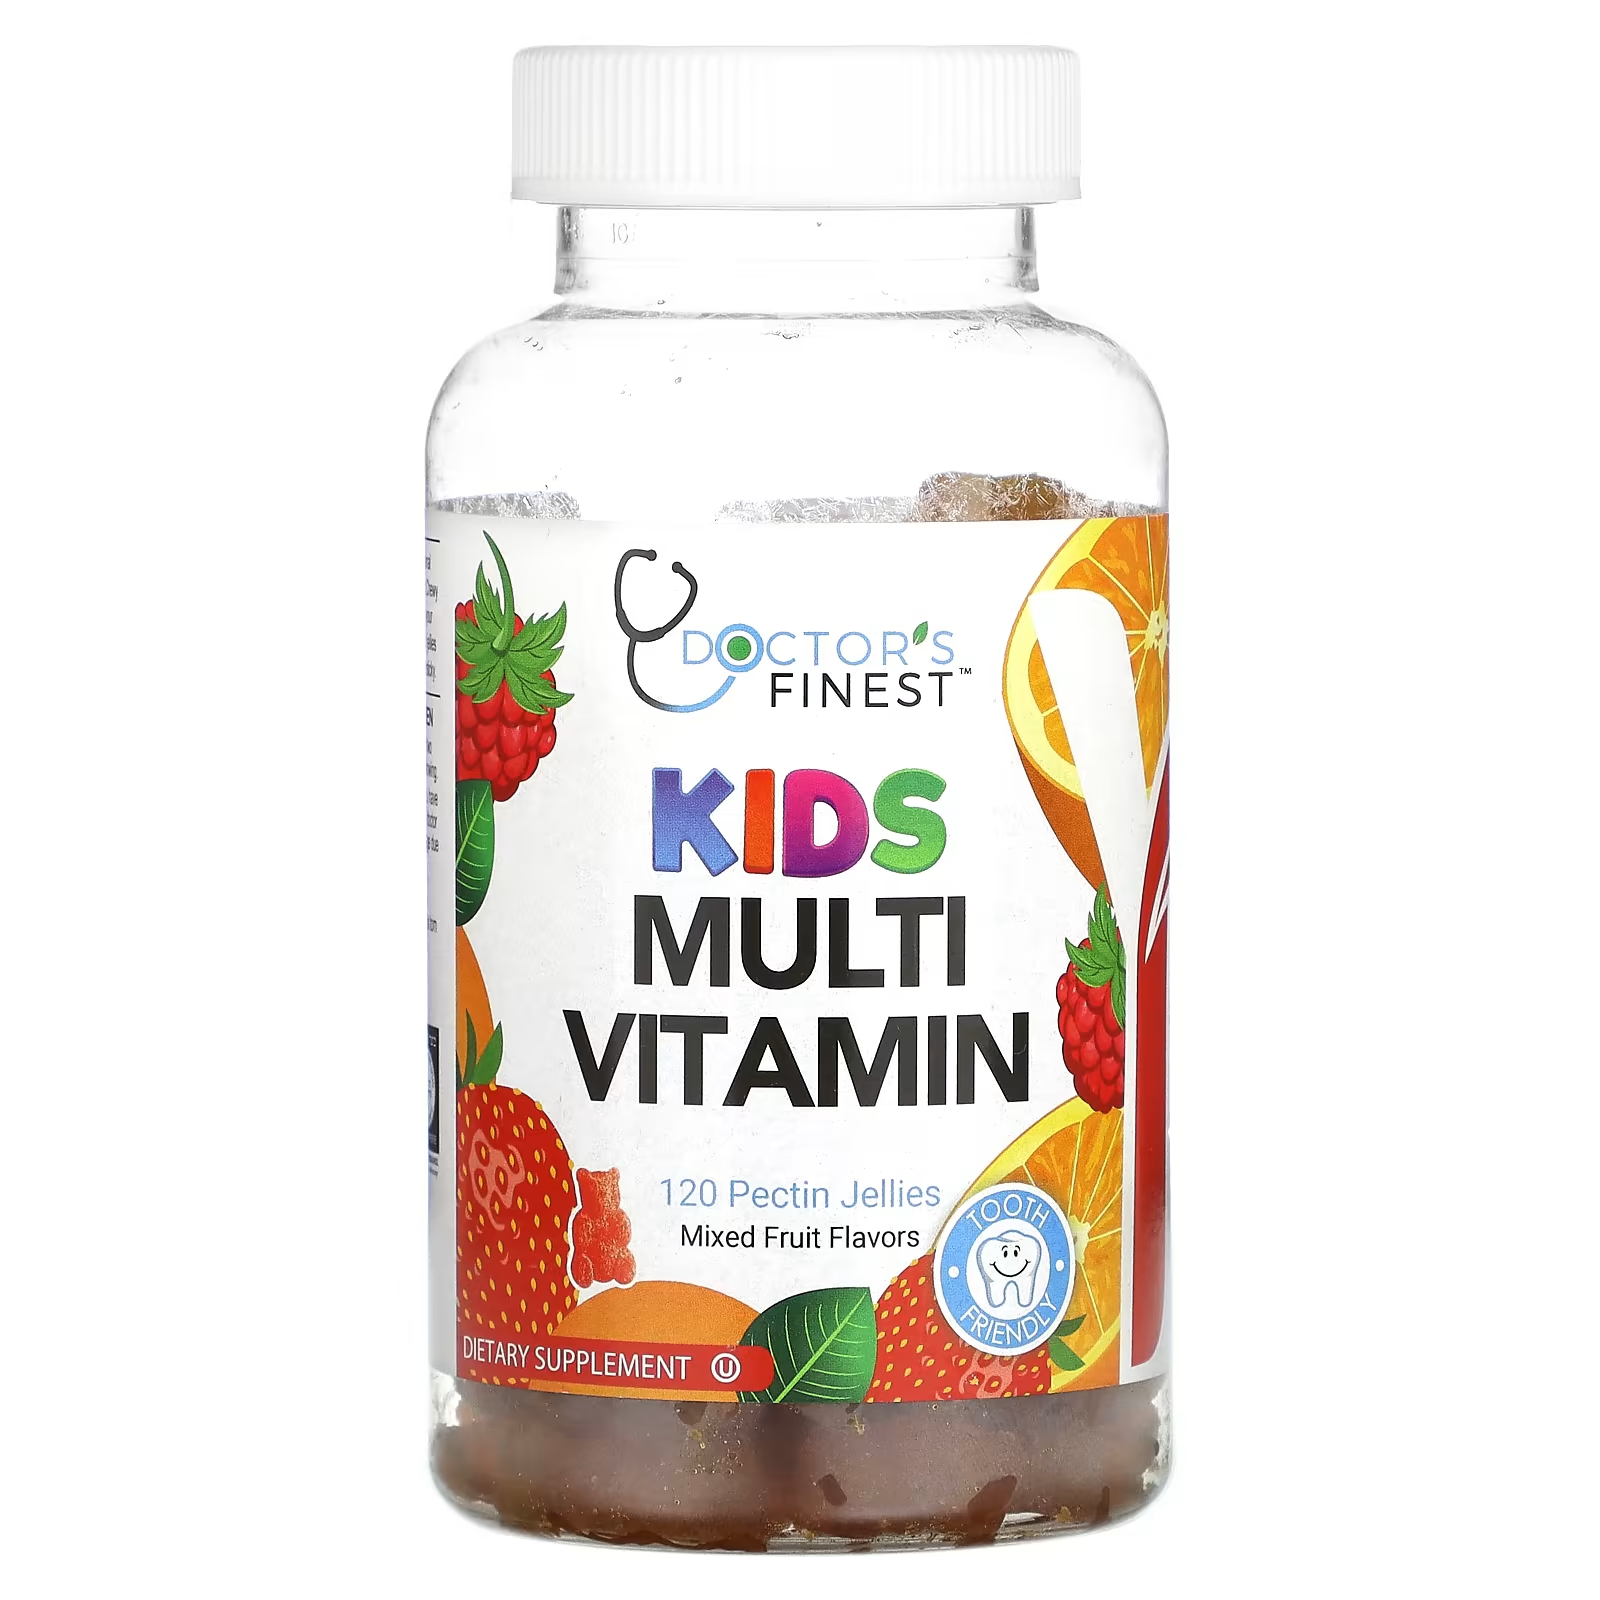 Vitamin mix. Микс витаминов. Nutromix витамины для детей. CGN Multivitamin Kids.